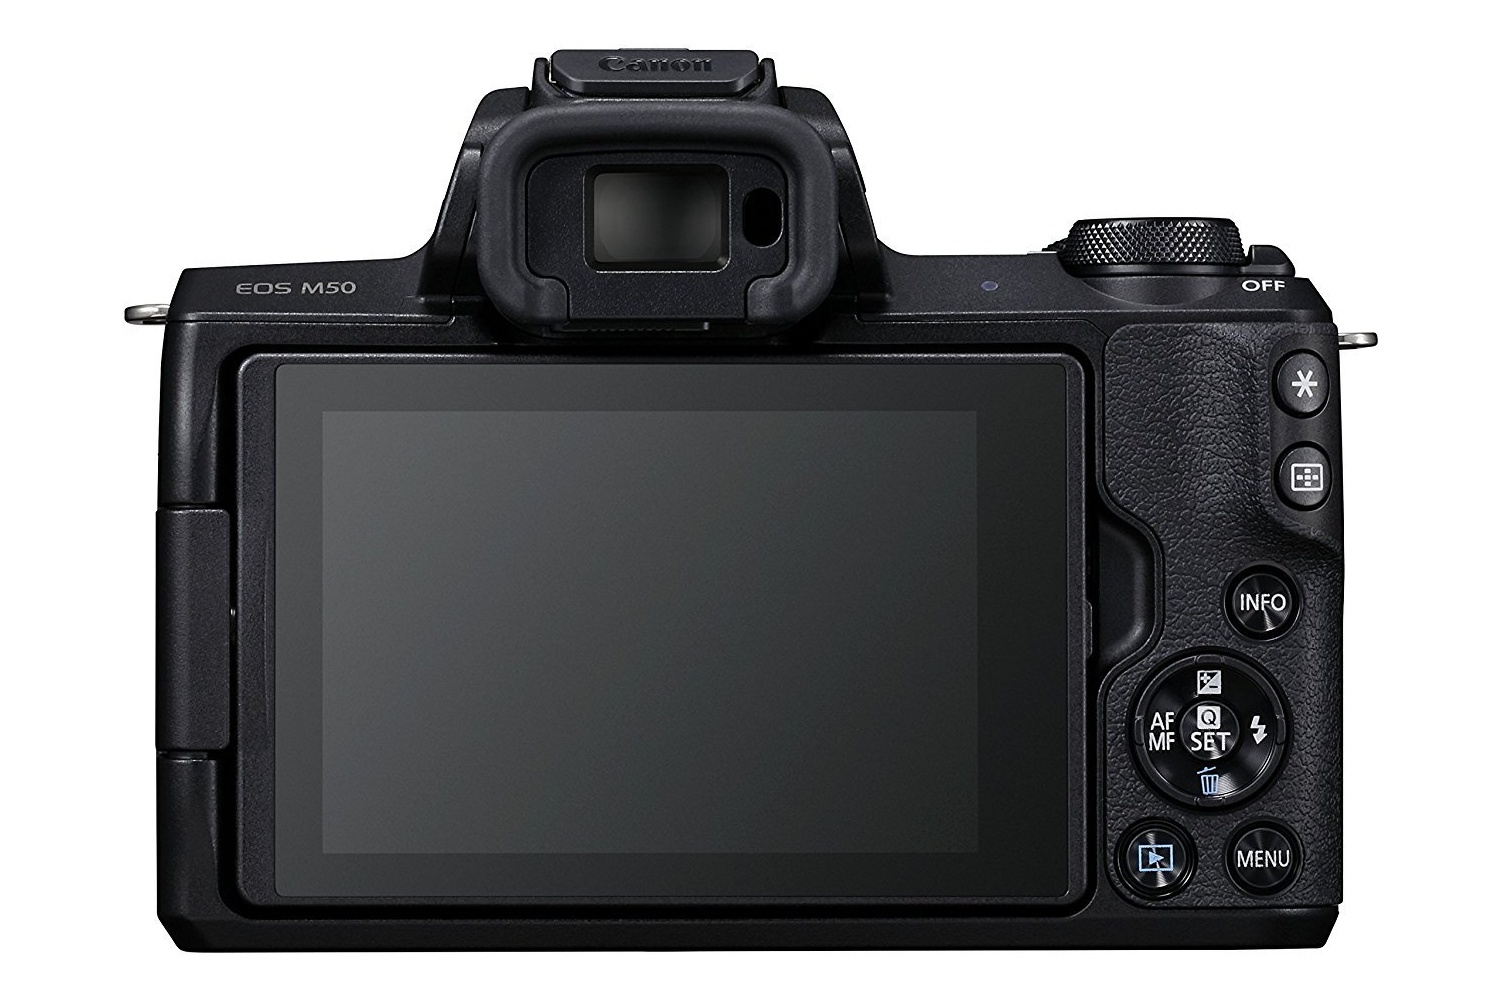 Bild von EOS M50 schwarz + 15-45mm IS STM + 55-200mm IS STM